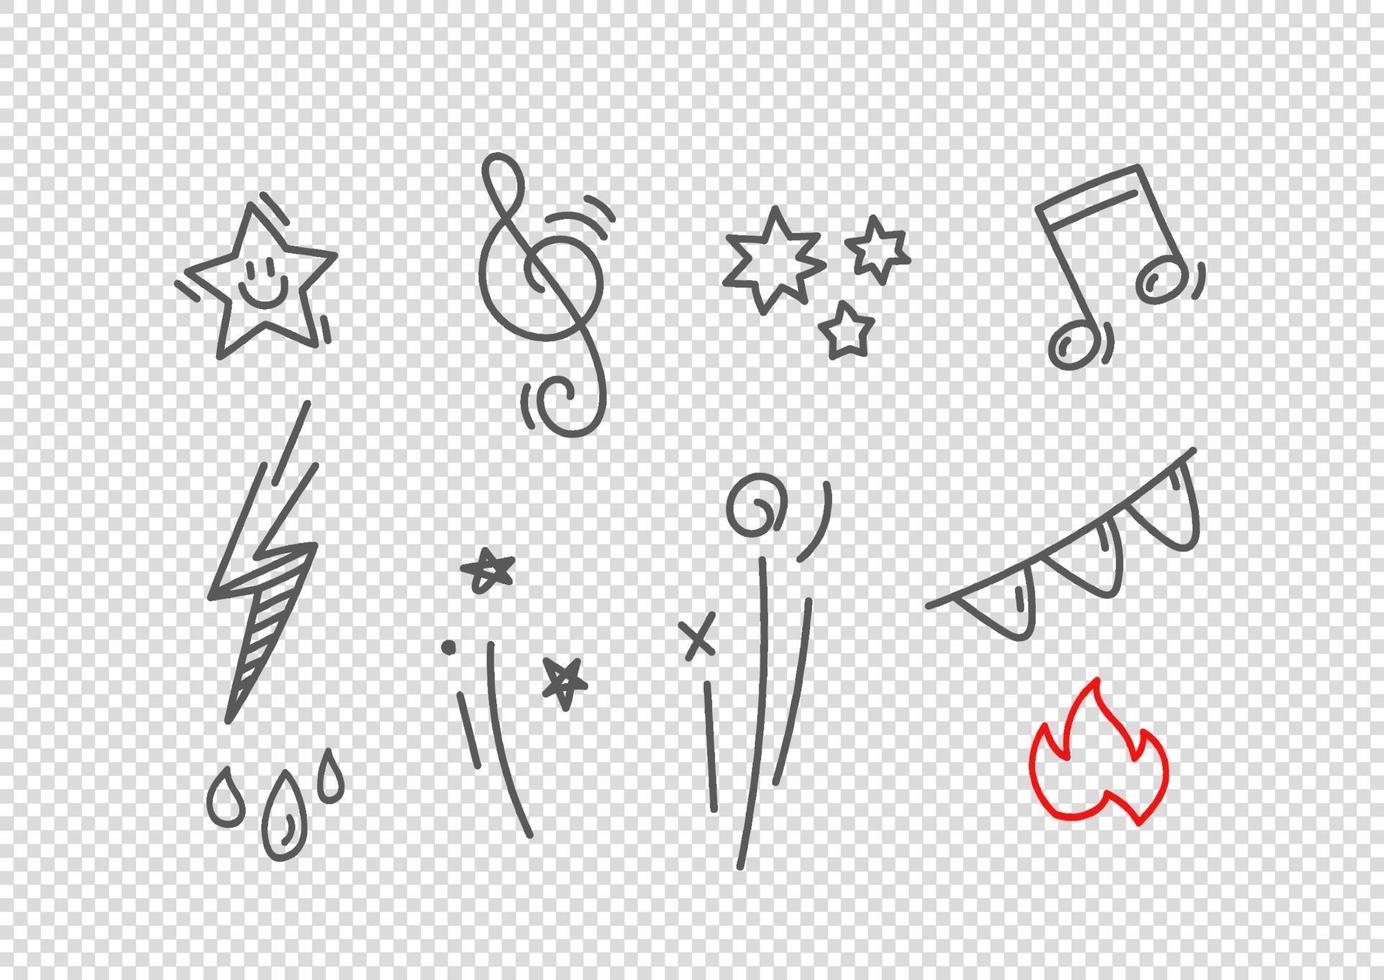 vector dibujado a mano elementos de estilo doodle aislados. elementos vectoriales para el diseño